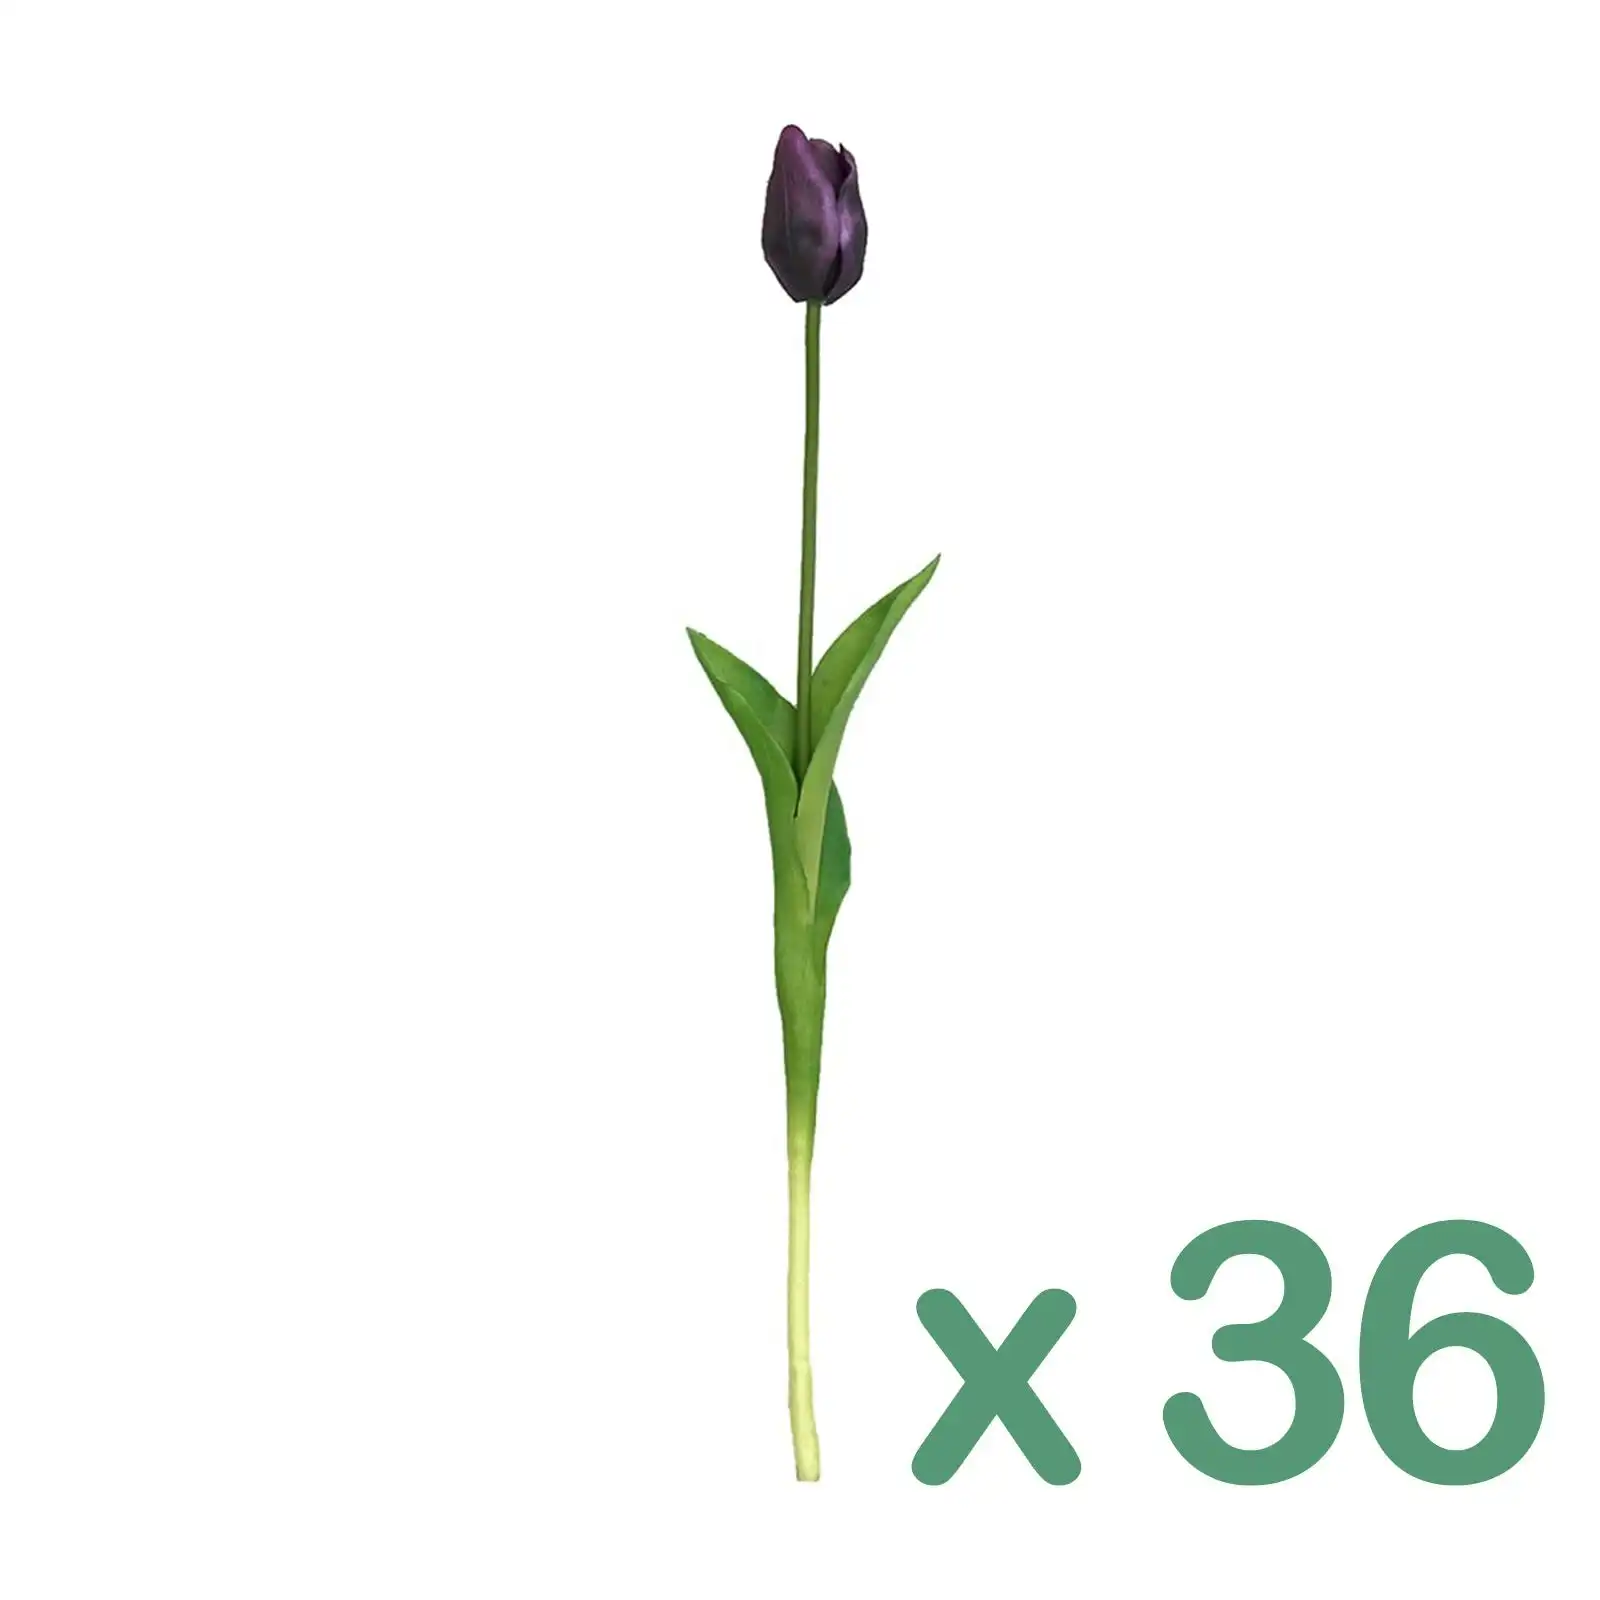 Carton of 36 - Artificial Stems - Tulip - PURPLE 50cm